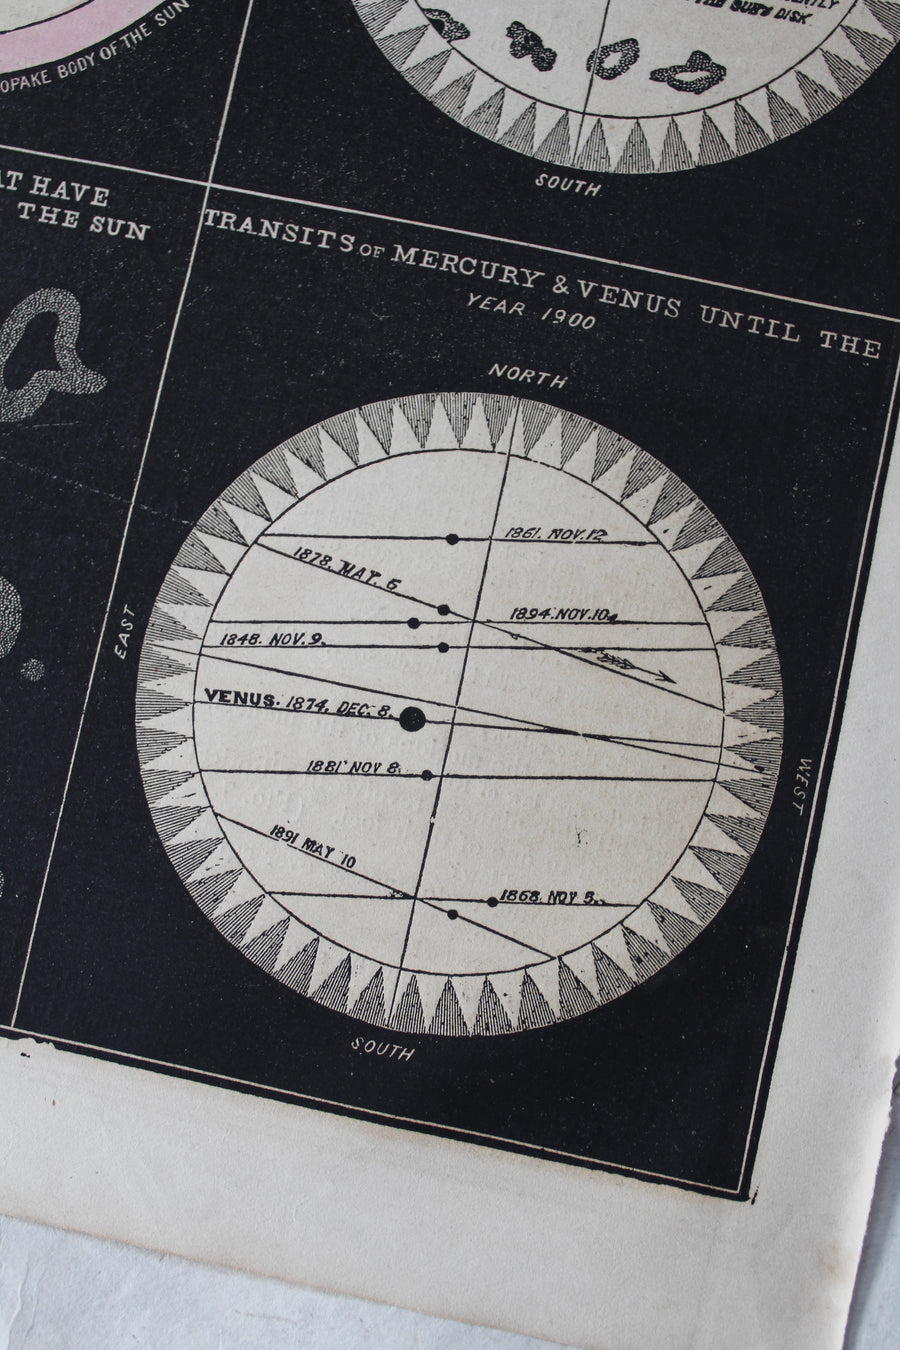 The Sun - 1866 Astronomy Engraving